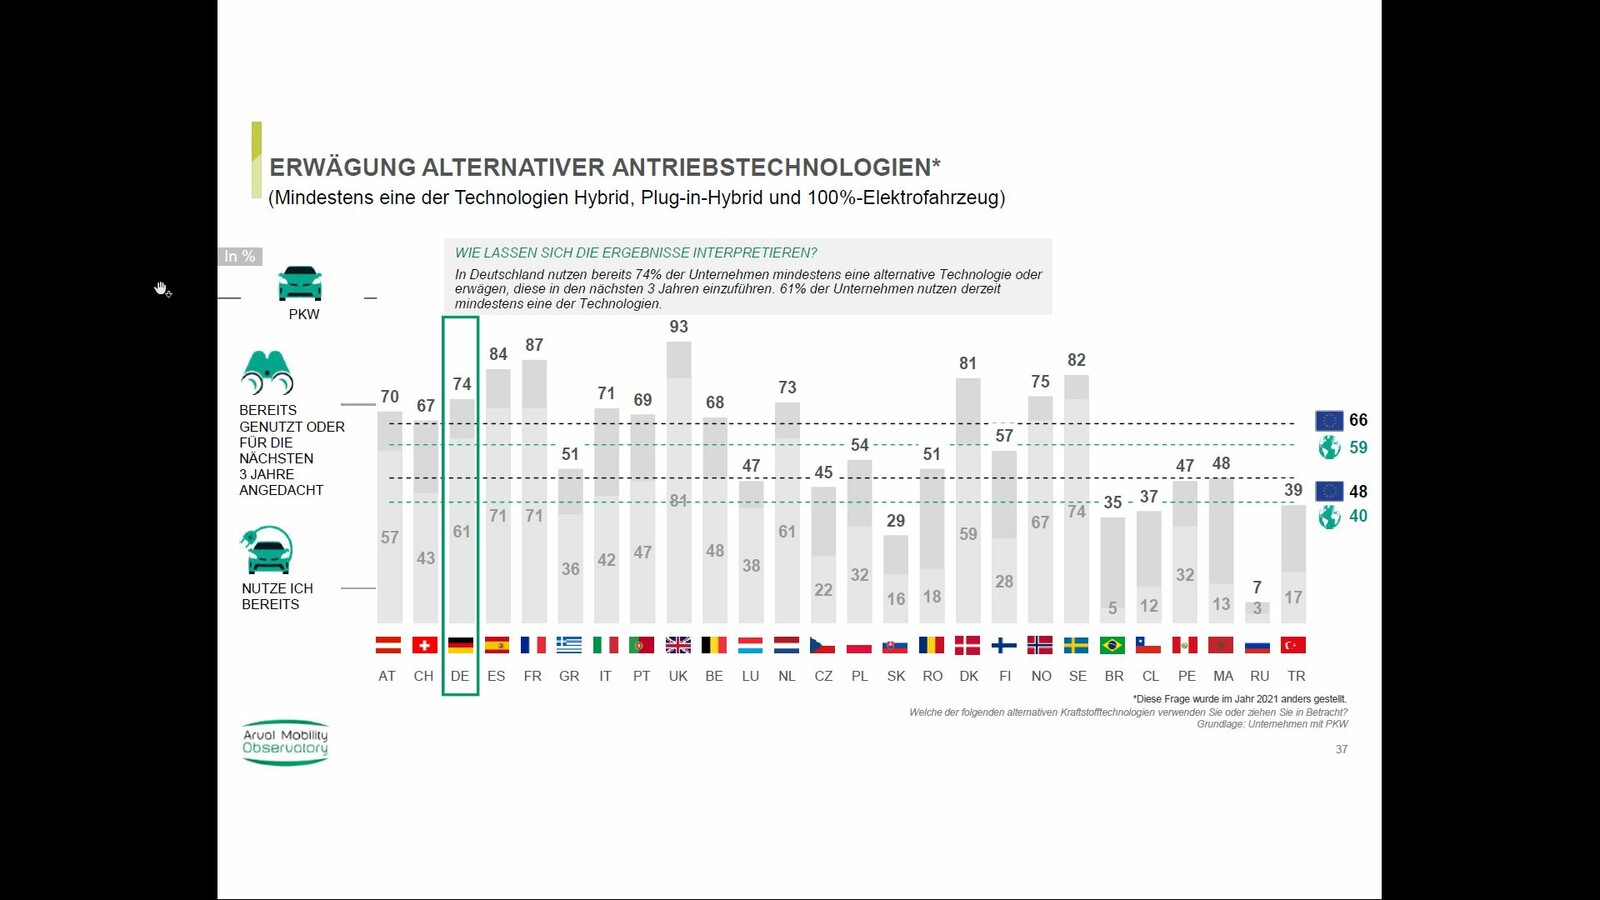 Sechs von zehn der befragten Unternehmen geben in diesem Jahr an, mindestens eine alternative Antriebstechnologie für ihre PKW eingeführt zu haben. Damit liegt Deutschland über dem europäischen Durchschnitt. 